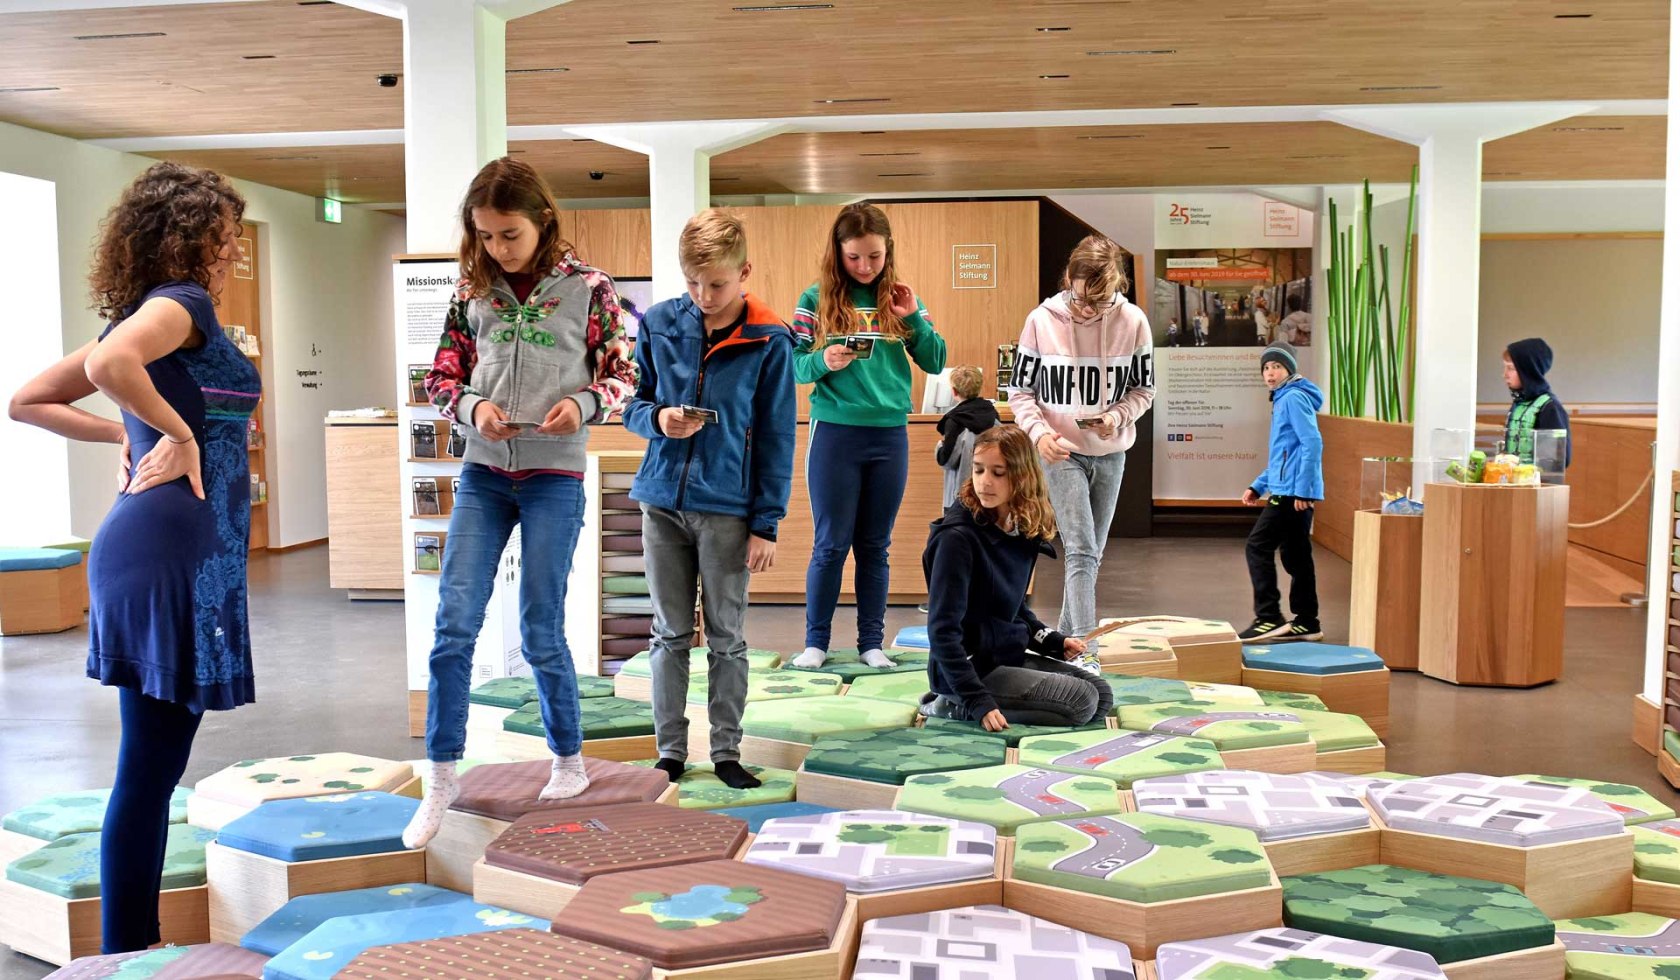 Kinder entdecken spielerisch und mit viel Bewegung die Ausstellung., © Heinz Sielmann Stiftung / Iris Blank